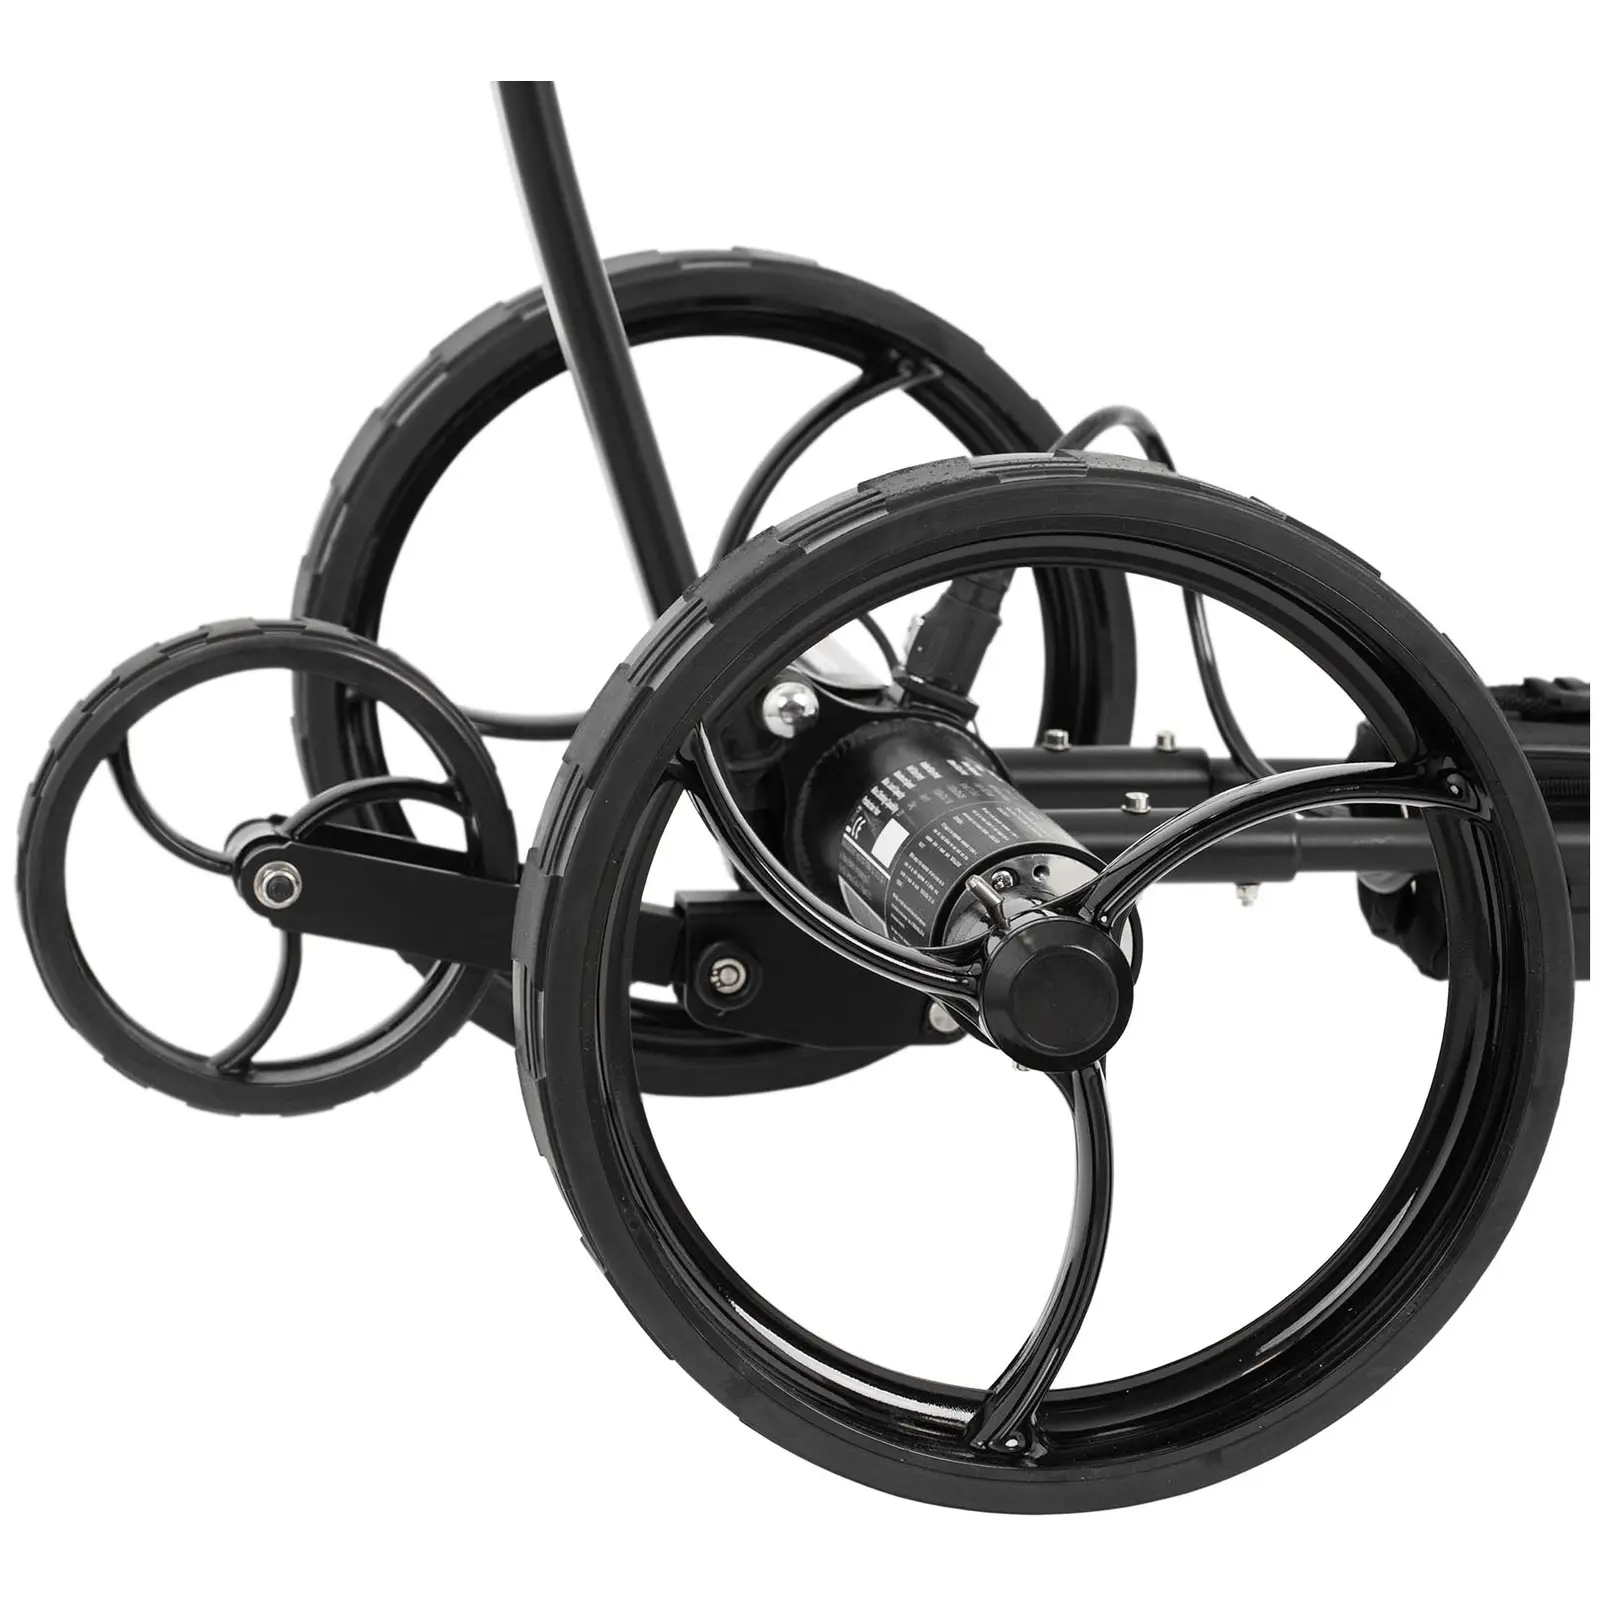 Outlet Wózek do golfa elektryczny - składany - zdalne sterowanie - 20 kg - aluminium